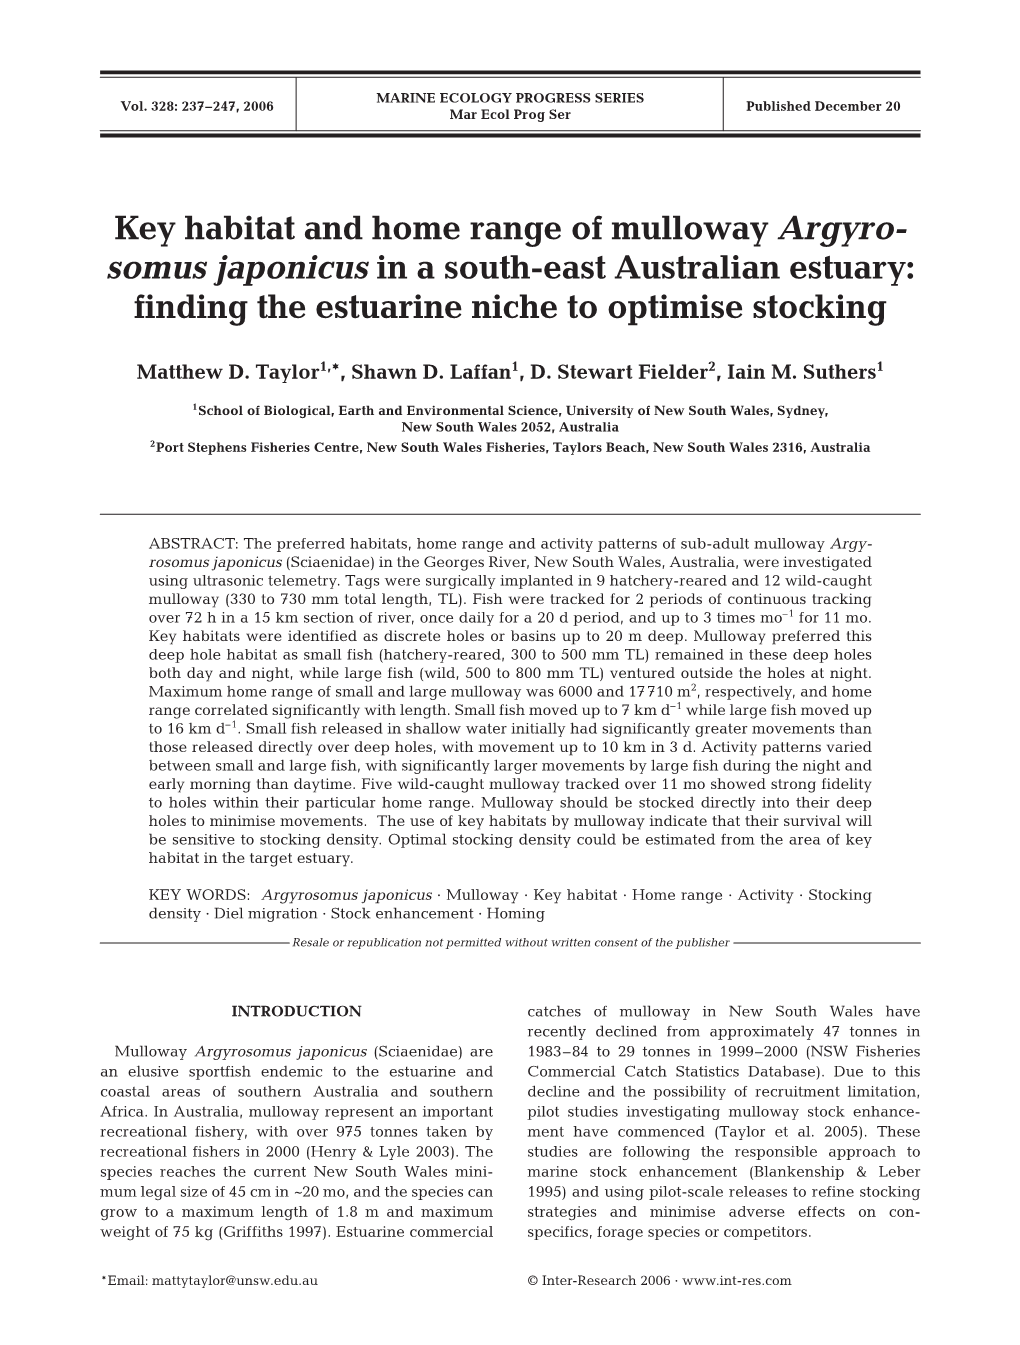 Key Habitat and Home Range of Mulloway Argyrosomus Japonicus